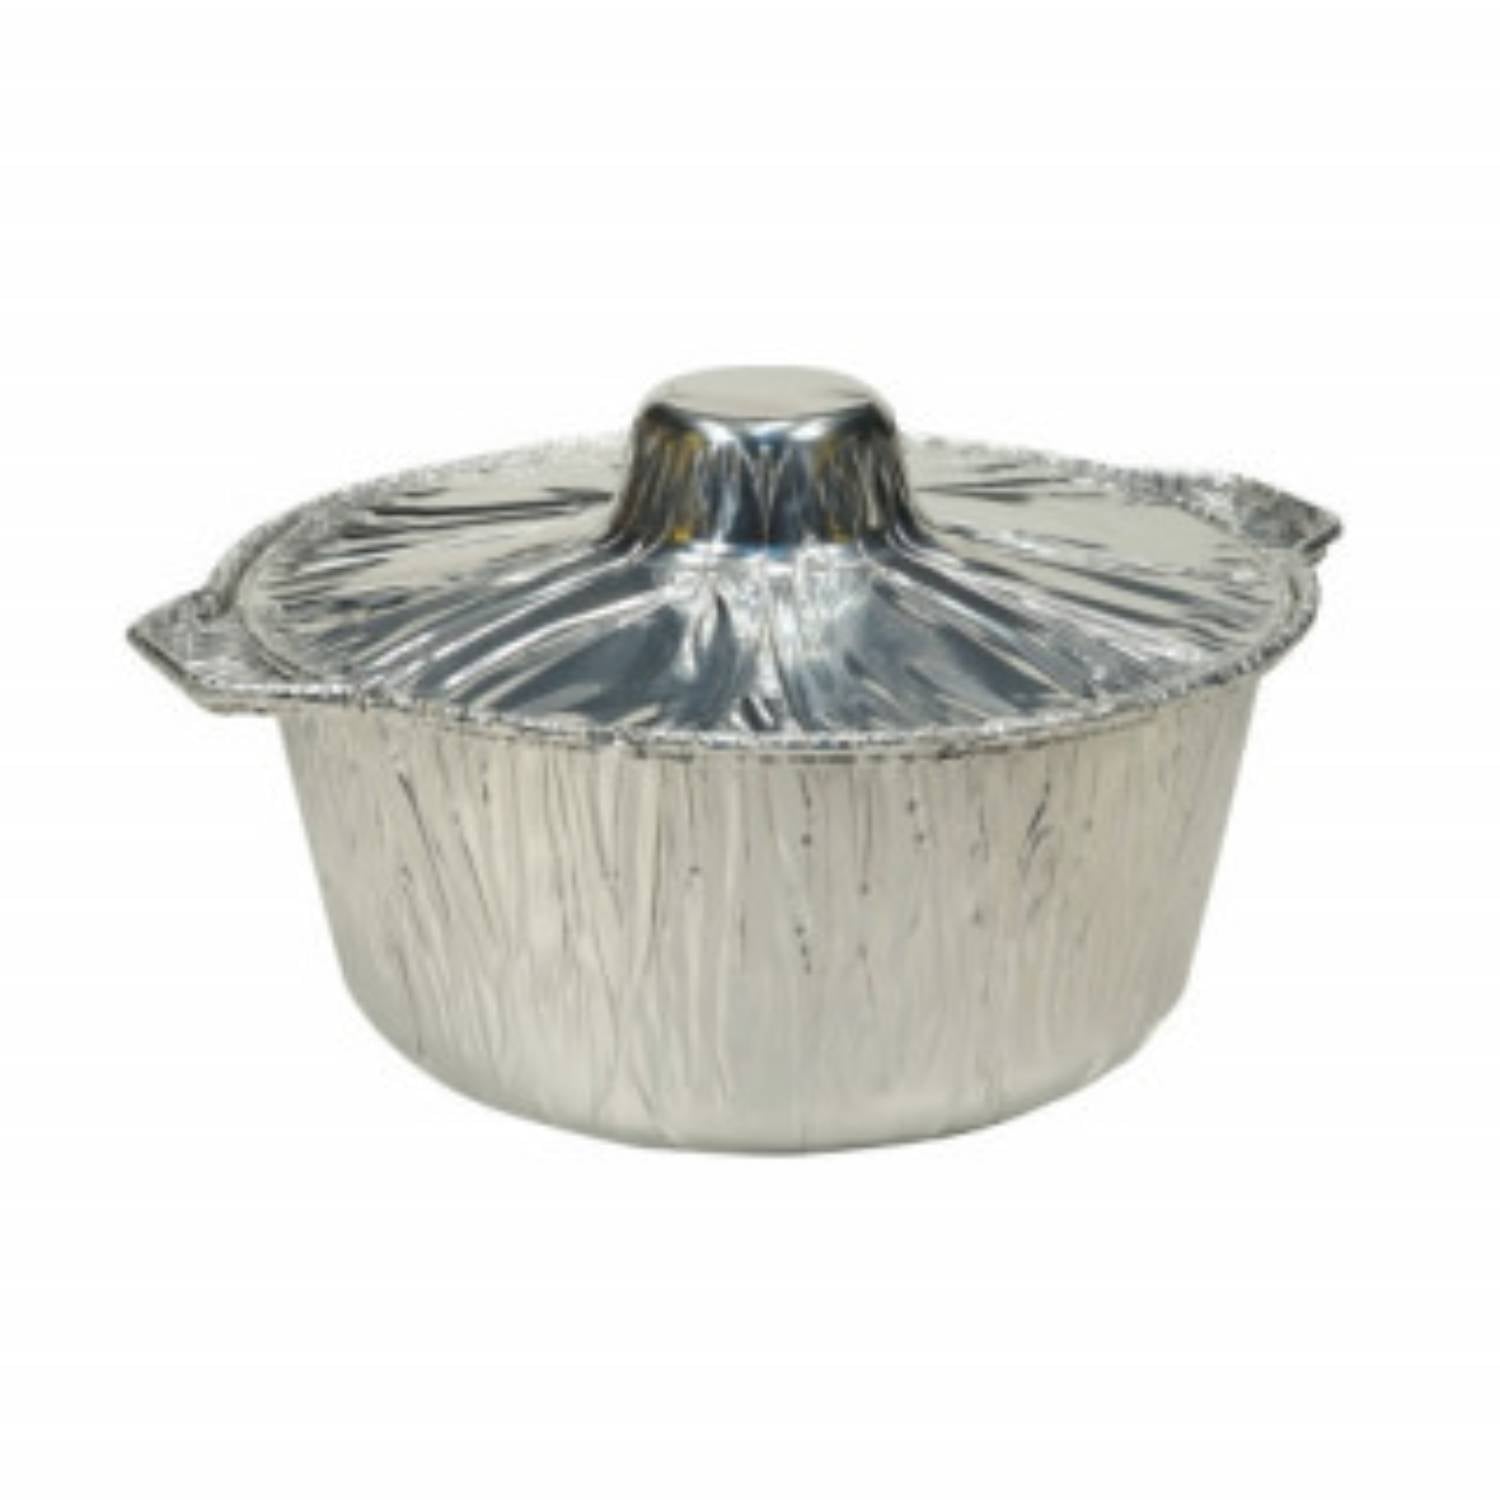 Jet Foil Aluminum Disposable Pot with Lid (Large) 11.50X4.50 5.5 Quart